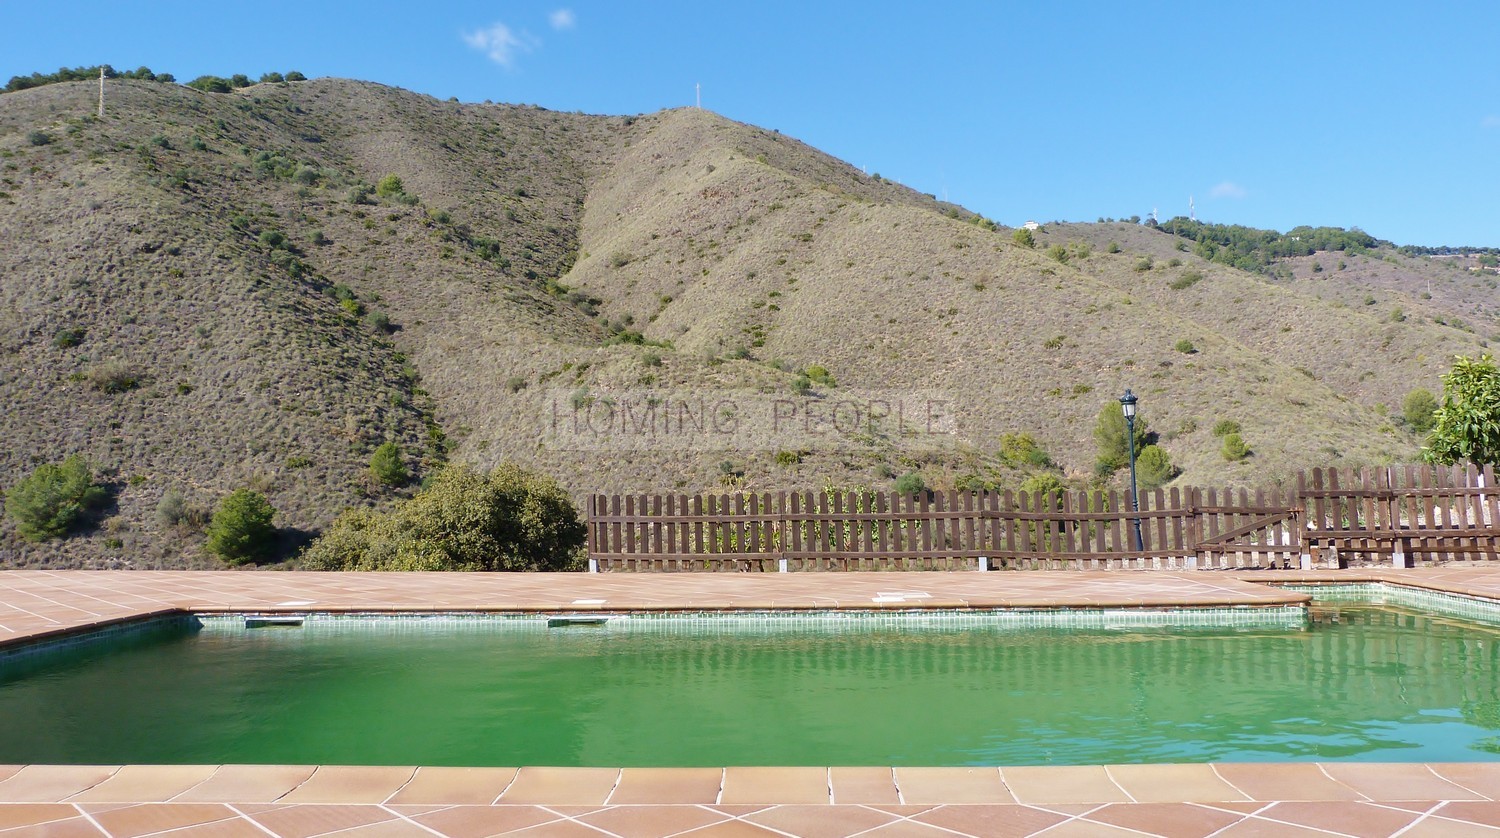 Chalet, piscina e instalaciones hípicas de alto nivel, con 10 hectáreas de terreno y a sólo 10 minutos de la ciudad